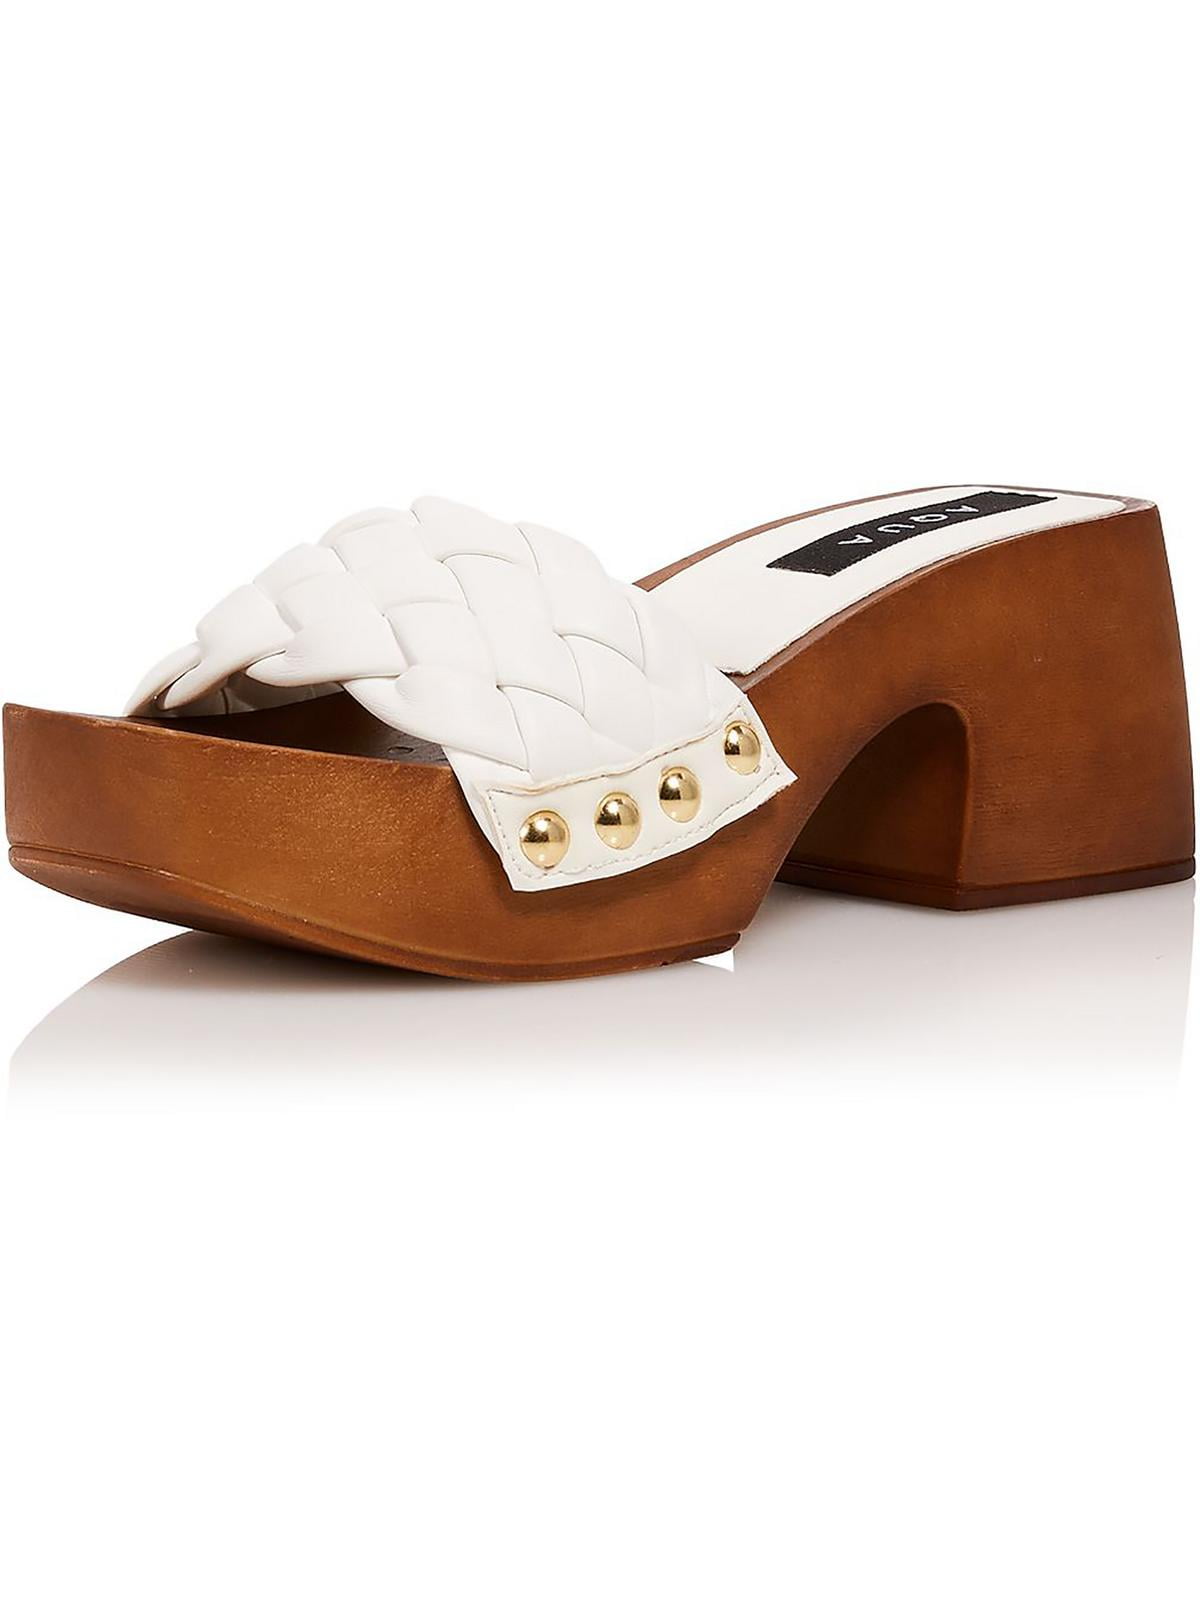 Clarks Lana Shore Women's Faux Leather Platform Sandals | eBay